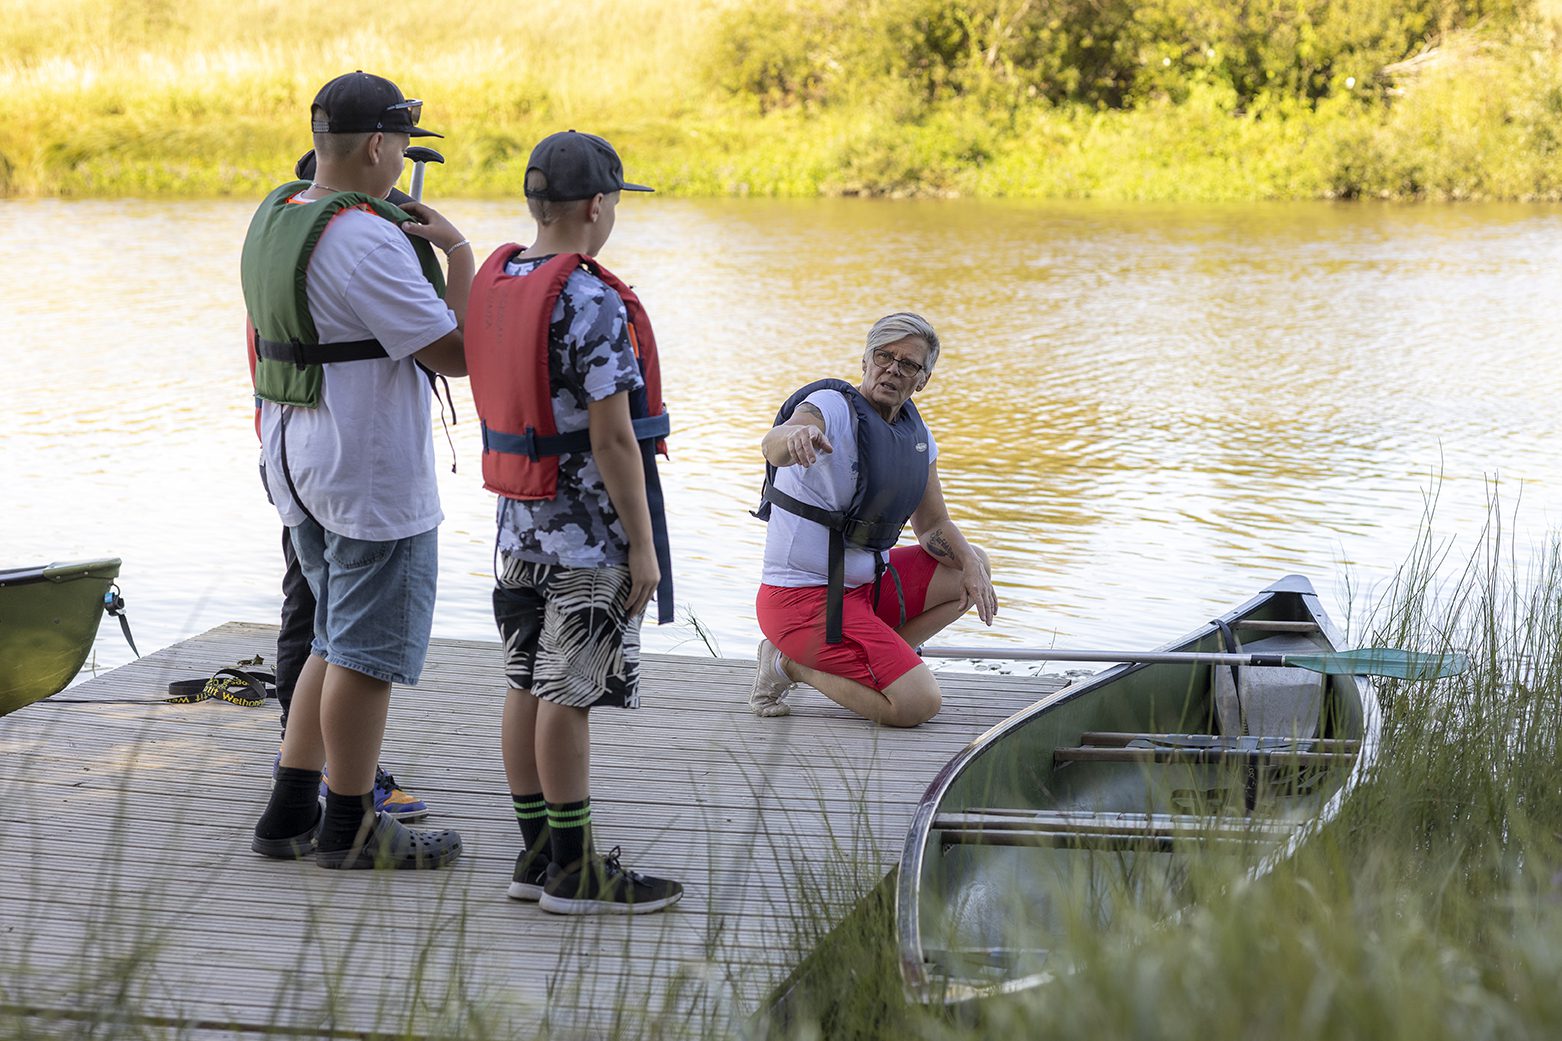 nuoriso-ohjaaja opastaa joen rannalla kolmea nuorta astumaan kanoottiin. kaikilla kesäinen vaatetus ja pelastusliivit päällä